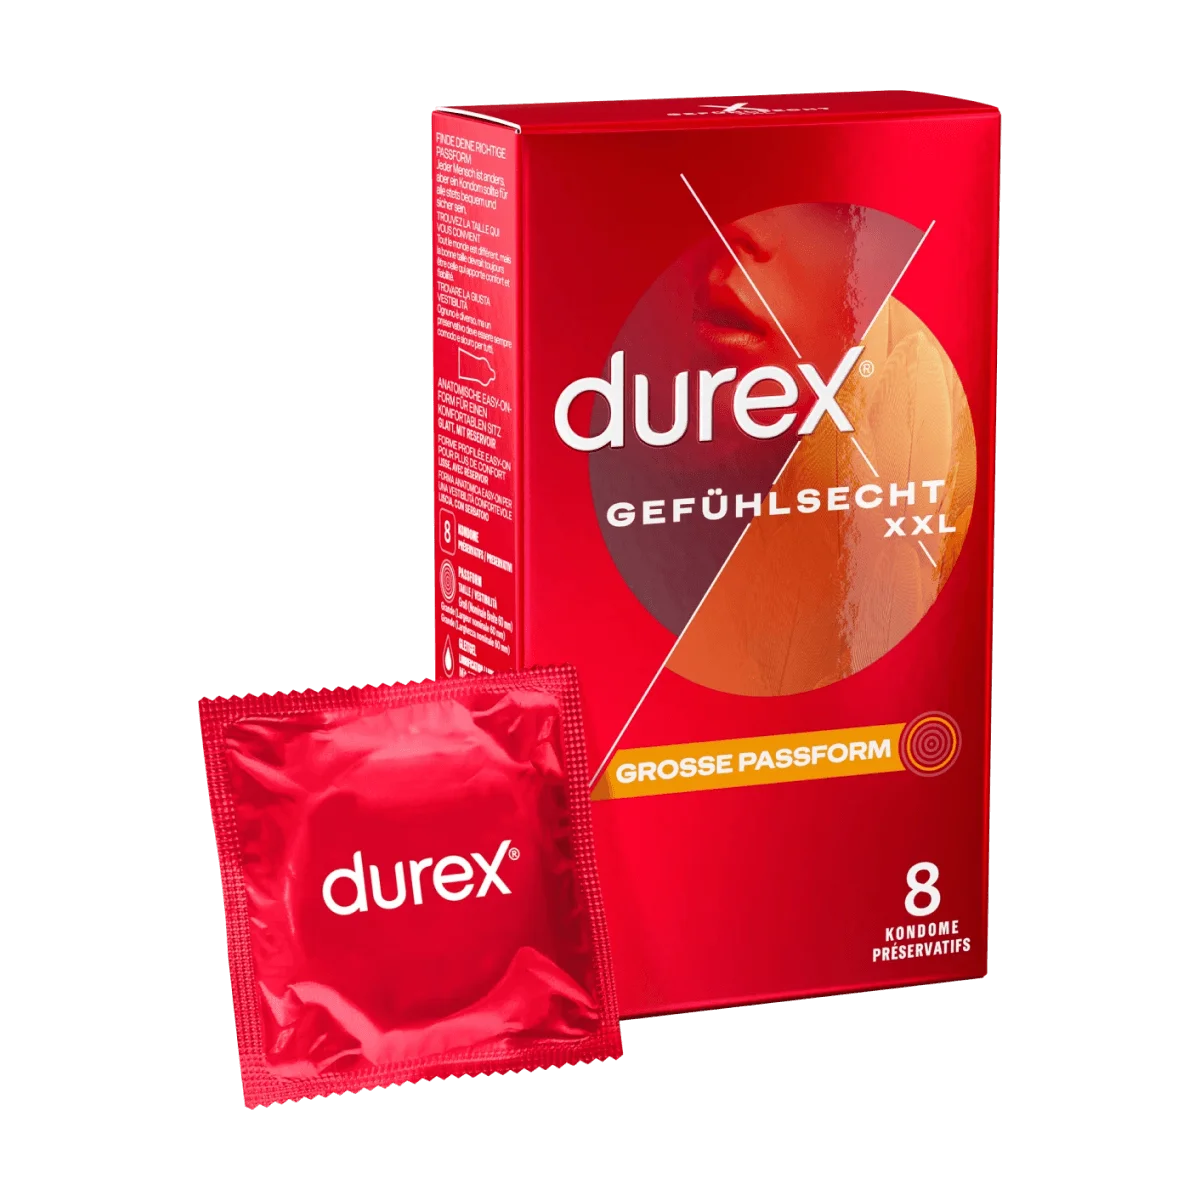 Durex Play Massage 2in1 - Sanftes 2in1 Massage- und Gleitgel mit Aloe Vera